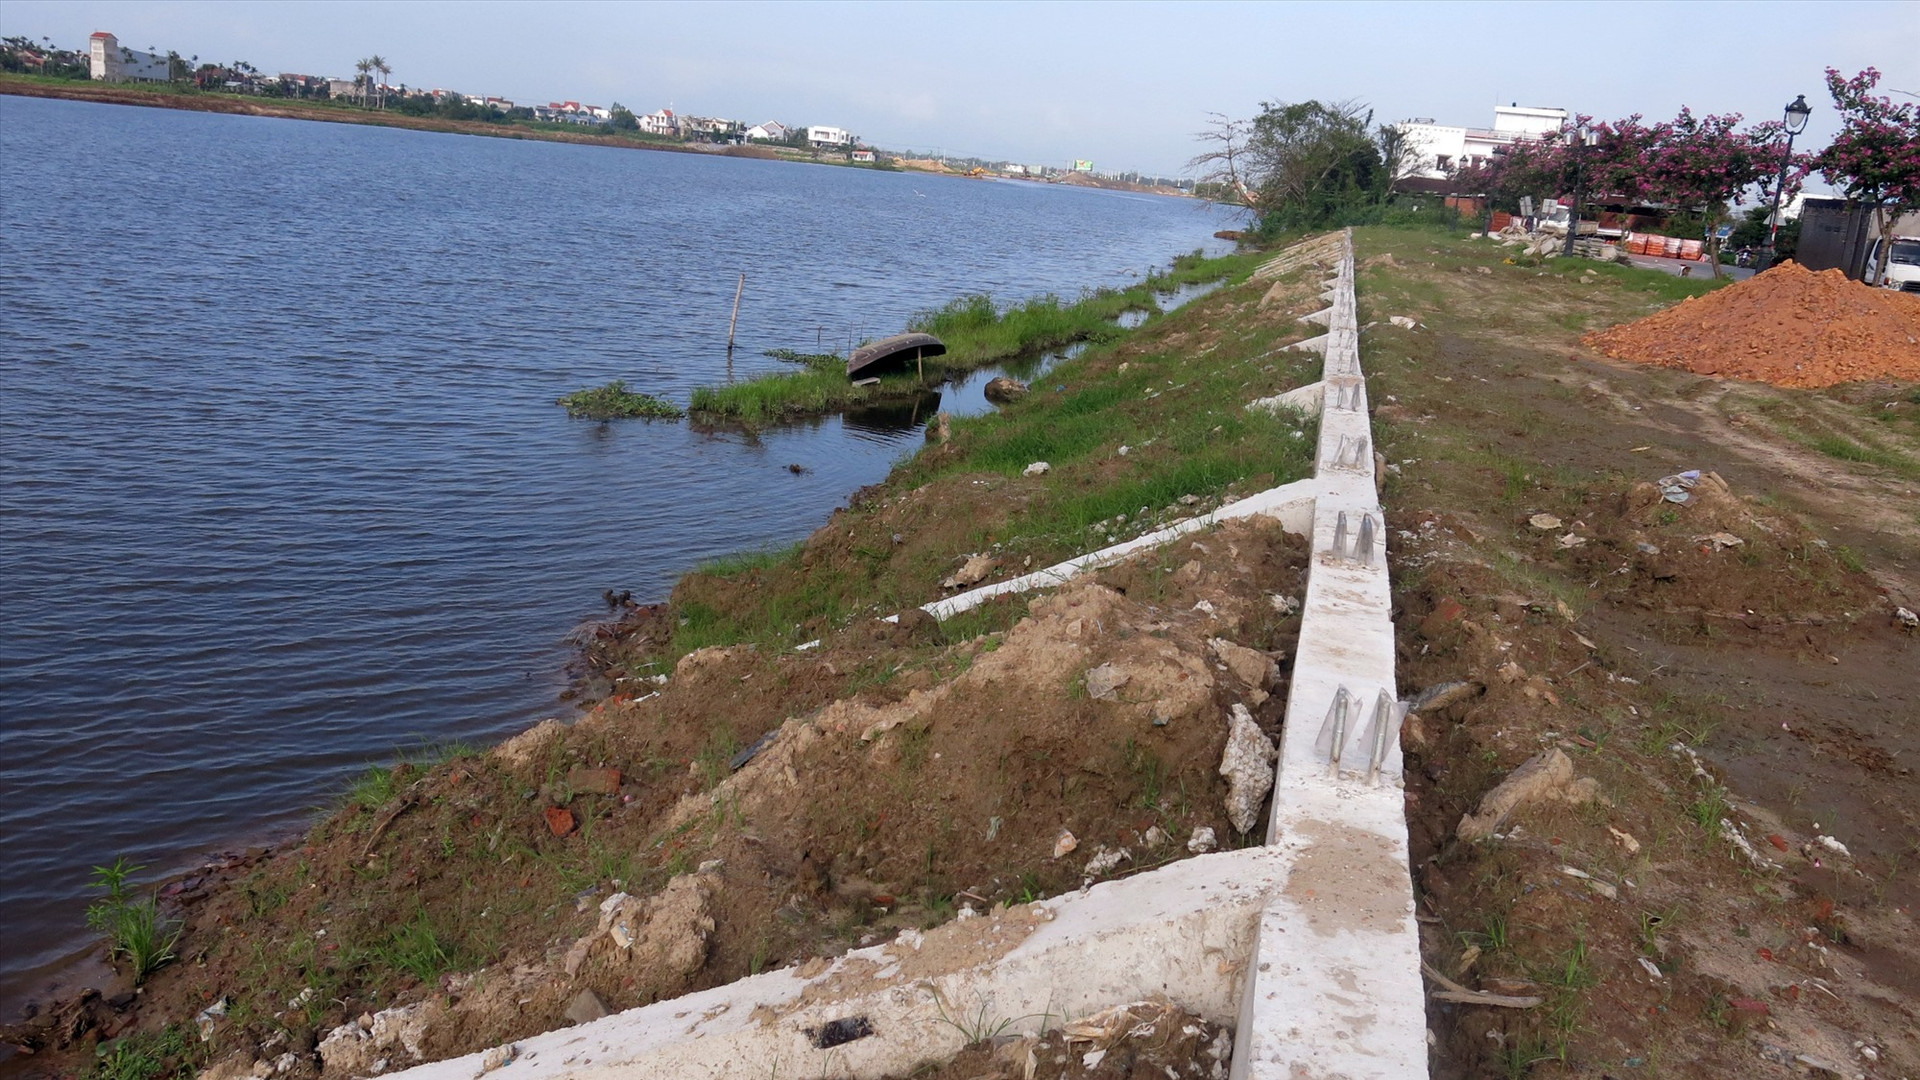 Hồ chứa nước Lai Nghi liên quan đến 21 thửa đất bị ảnh hưởng, chỉ bàn giao được 22,8/25,5 ha nên tiến độ đầu tư các hạng mục công trình dự án chưa thể hoàn thiện đúng tiến độ dự án. Ảnh T.D